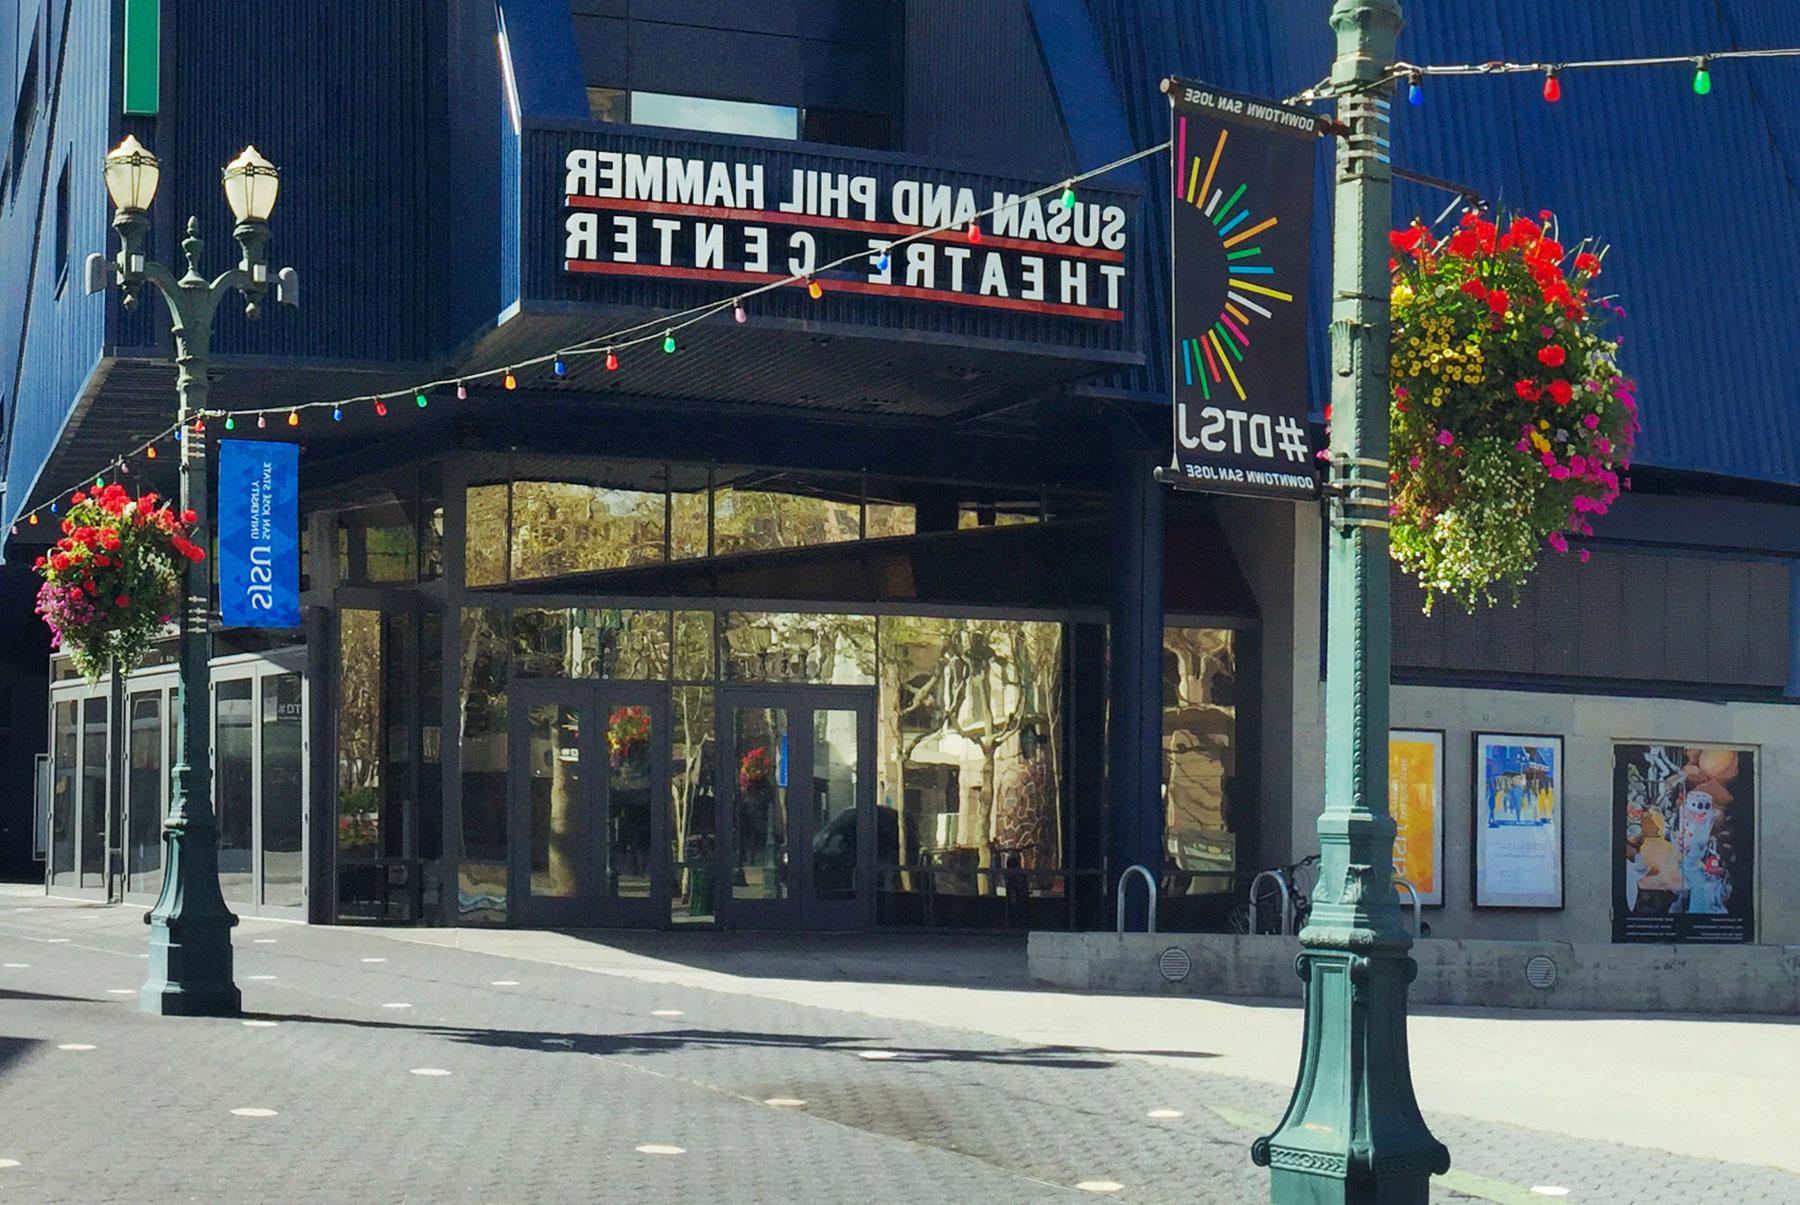 锤剧院 Center located in hte heart of downtown San Jose.